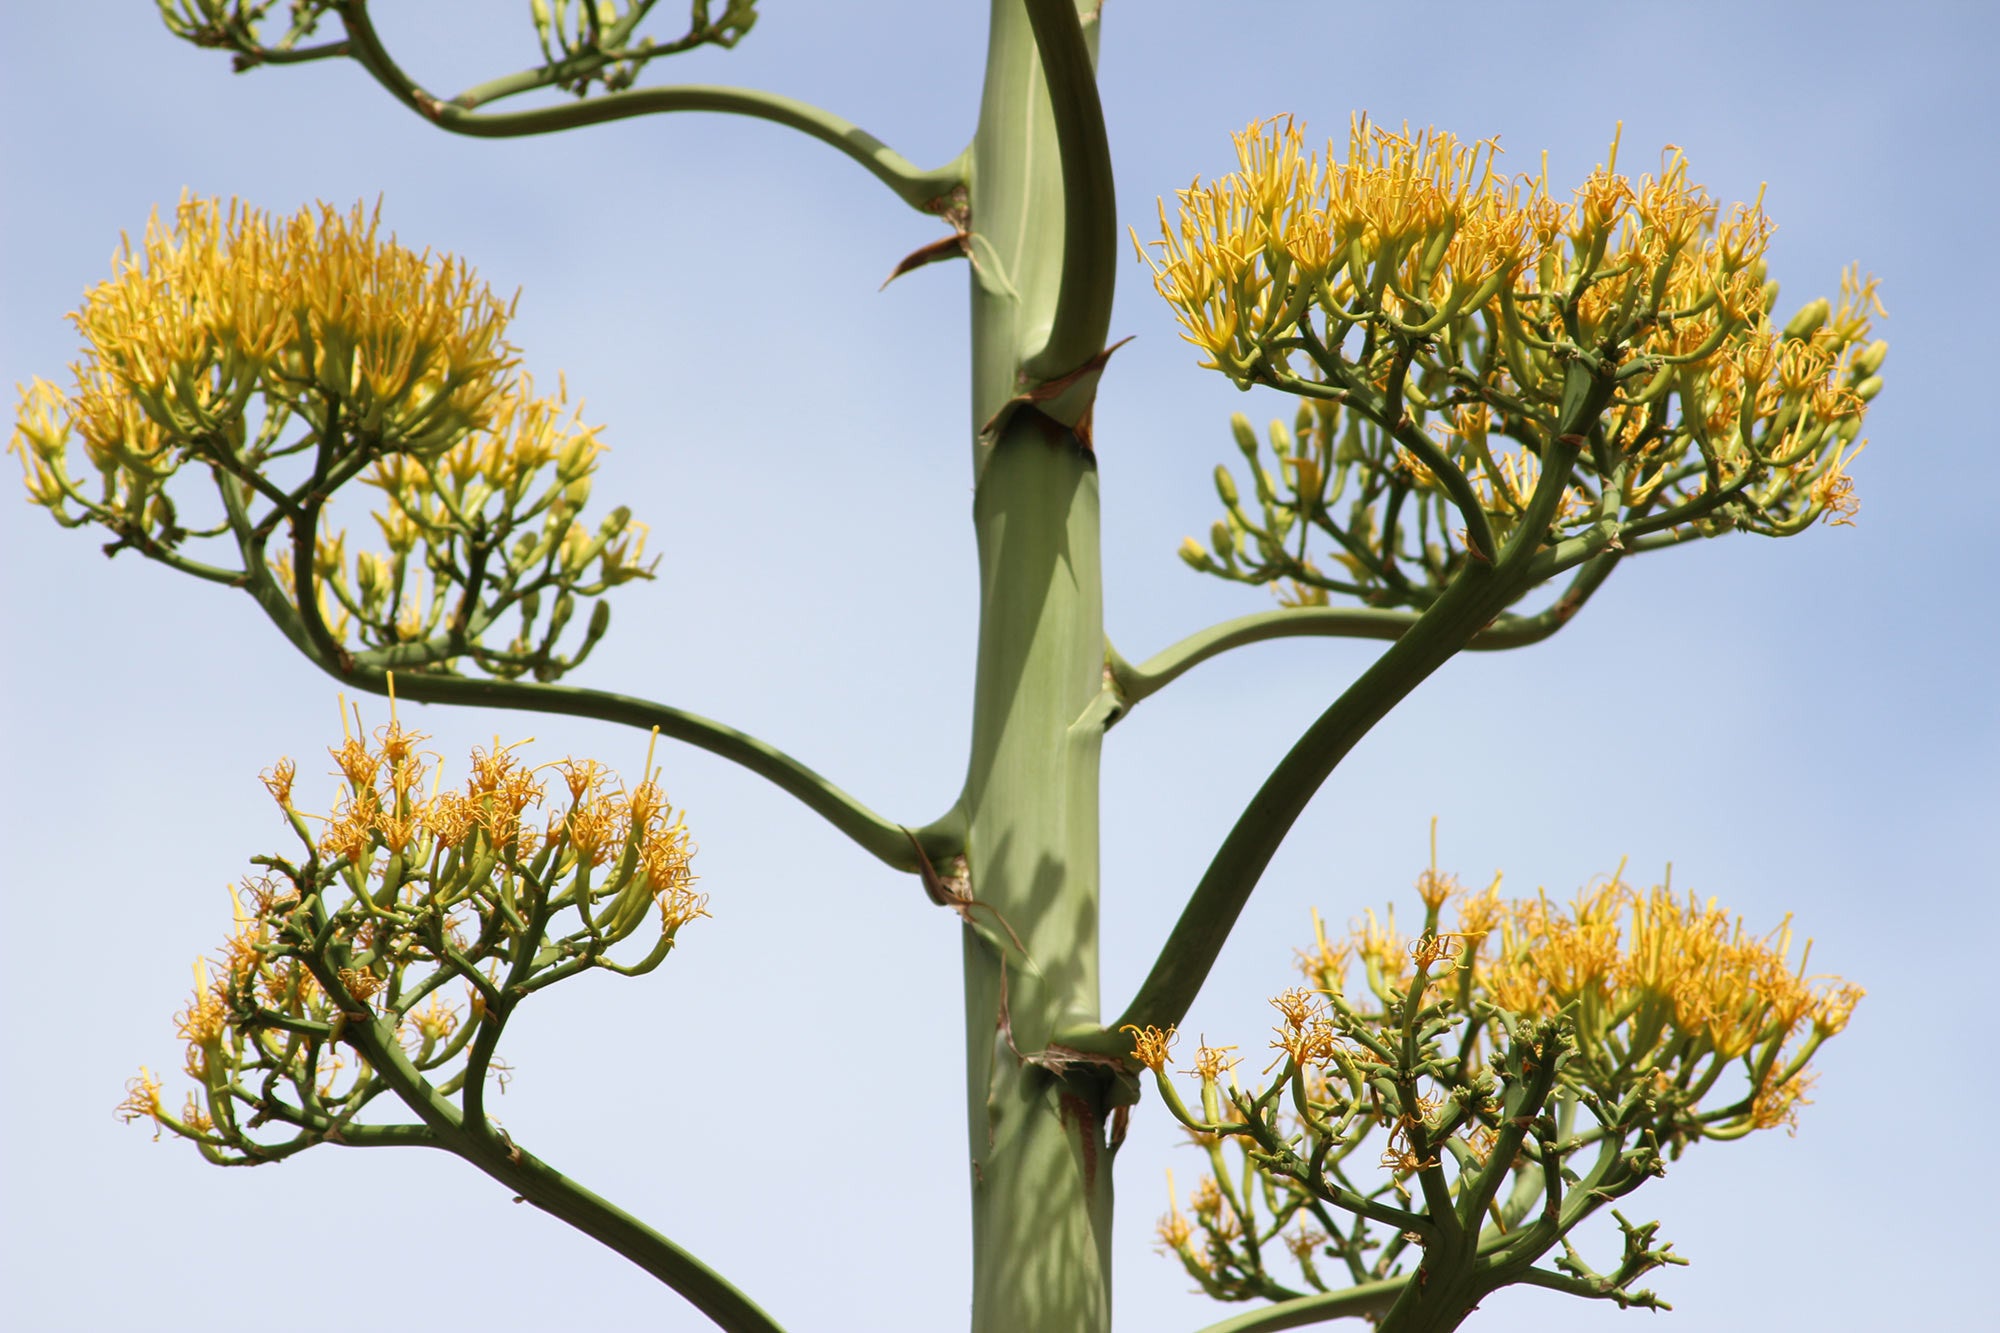 Cactus plant in bloom